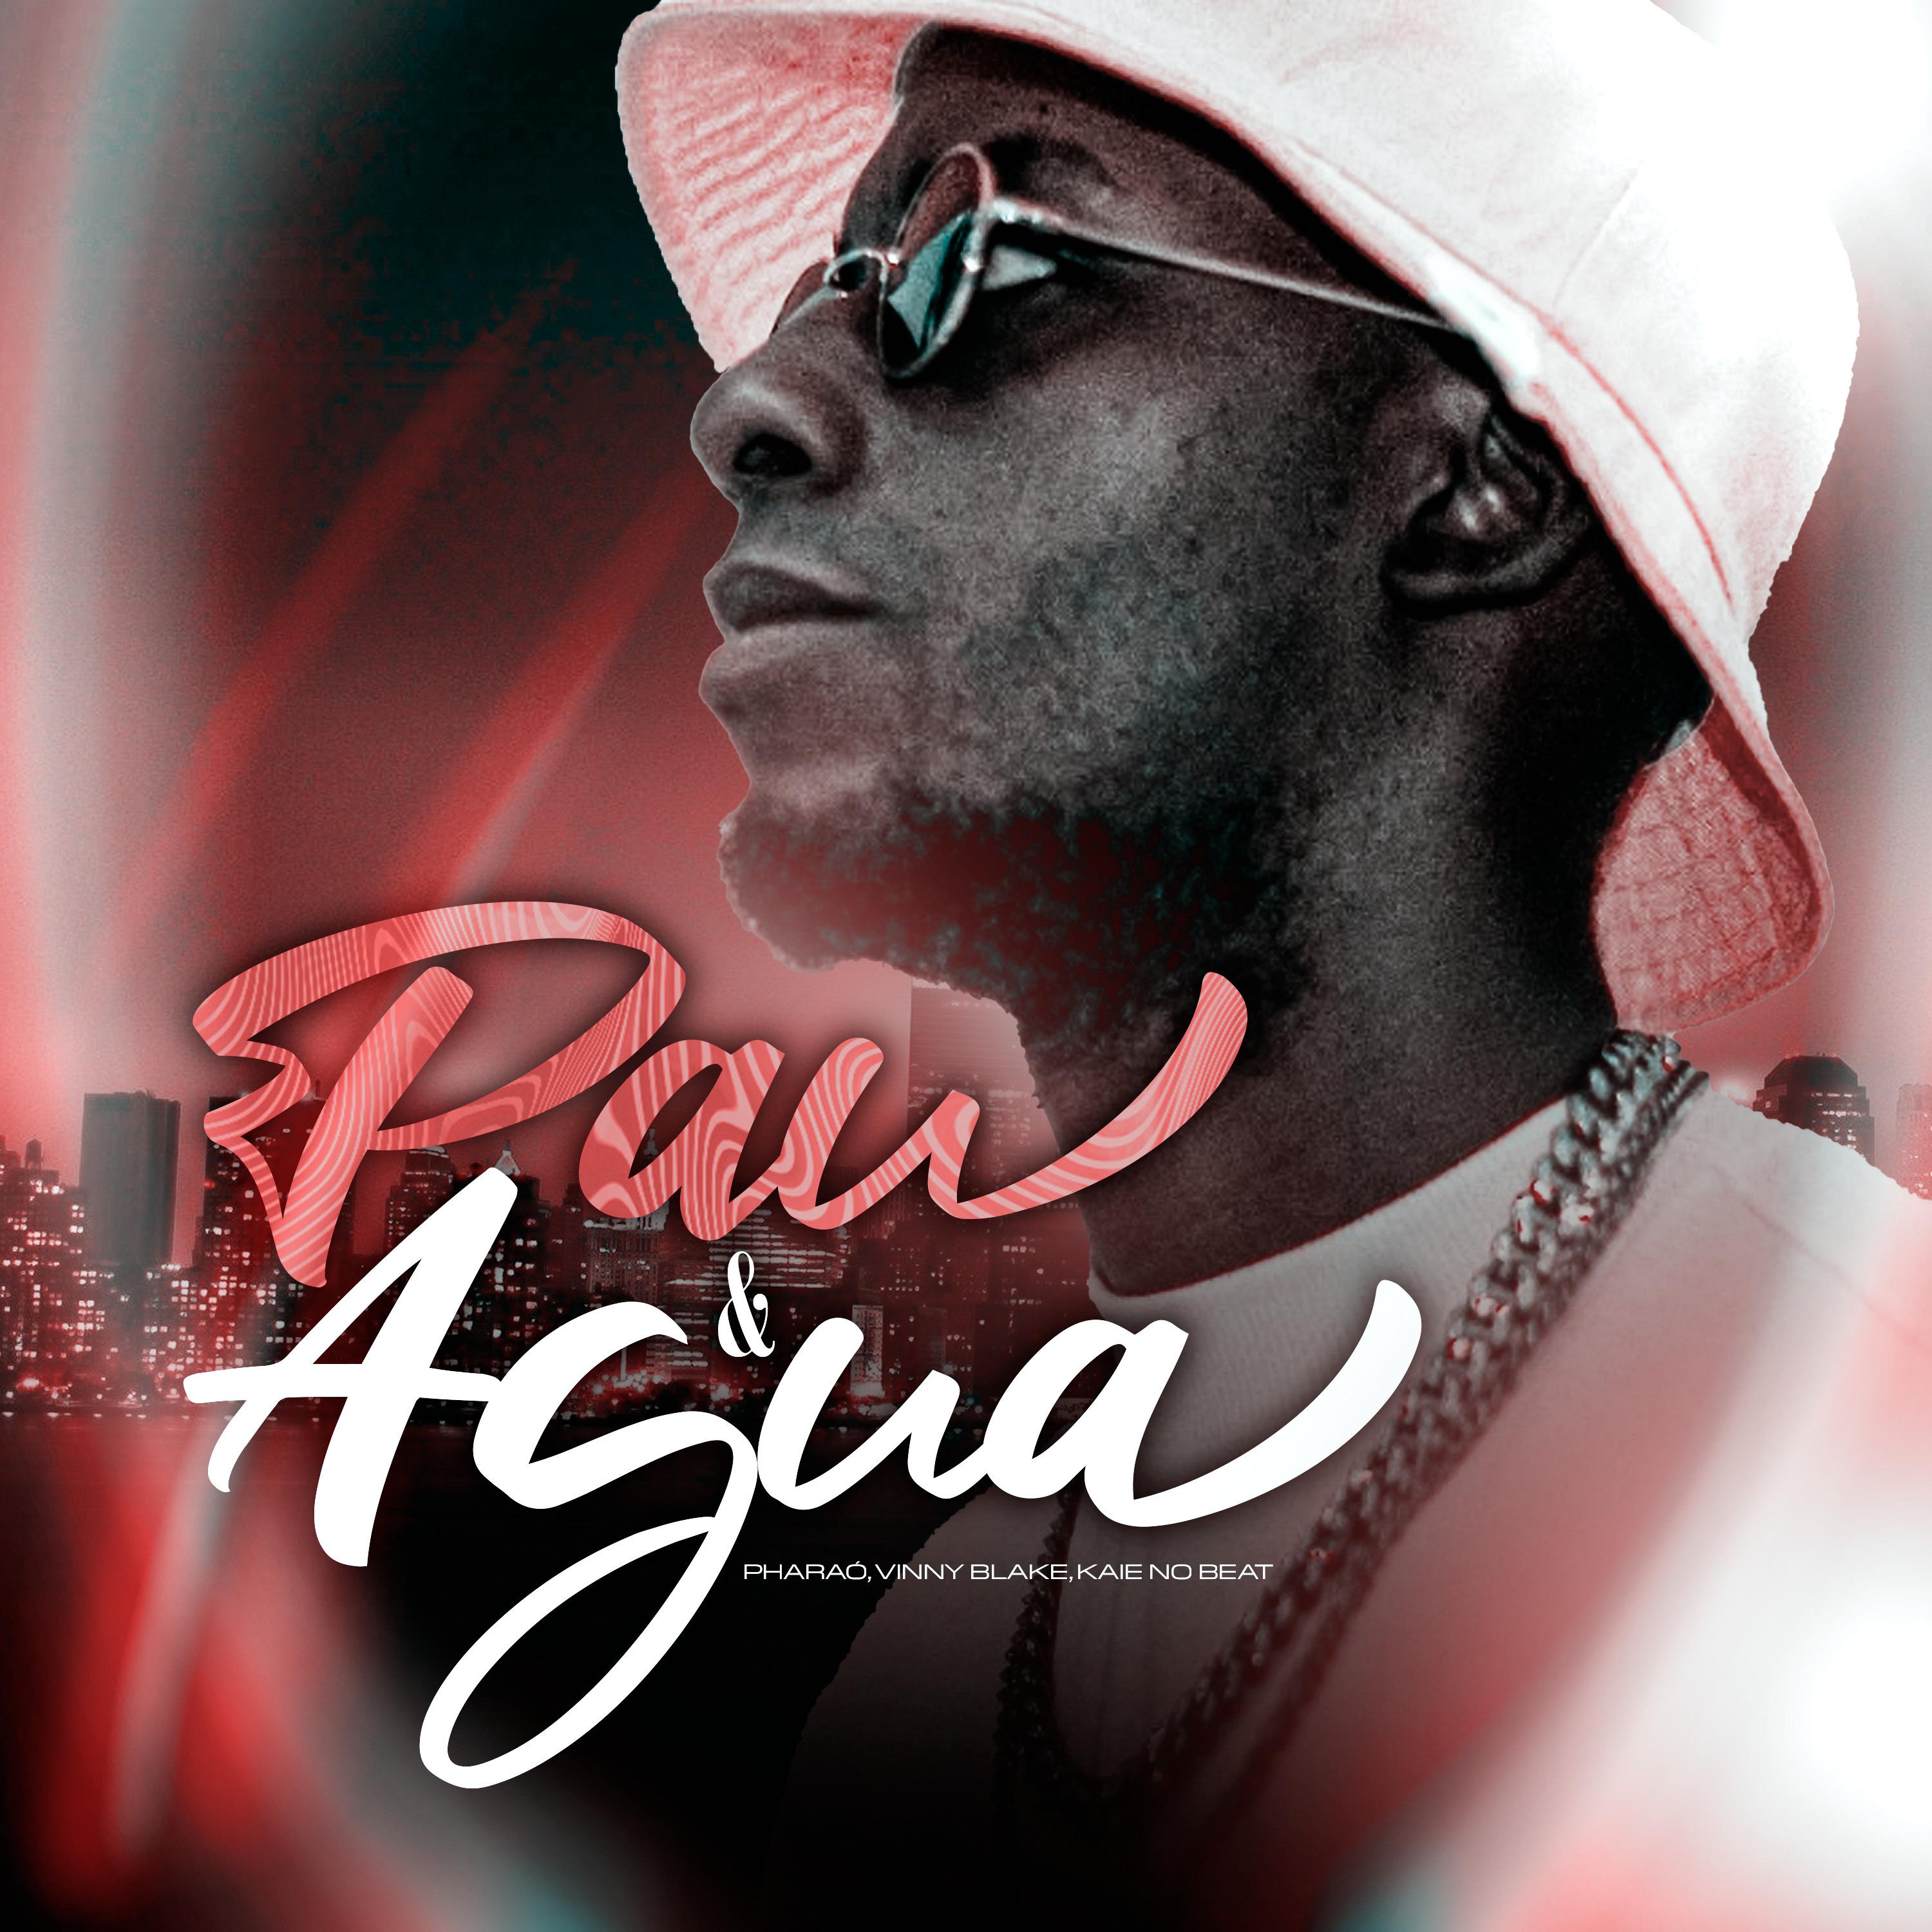 Постер альбома Pau e Água